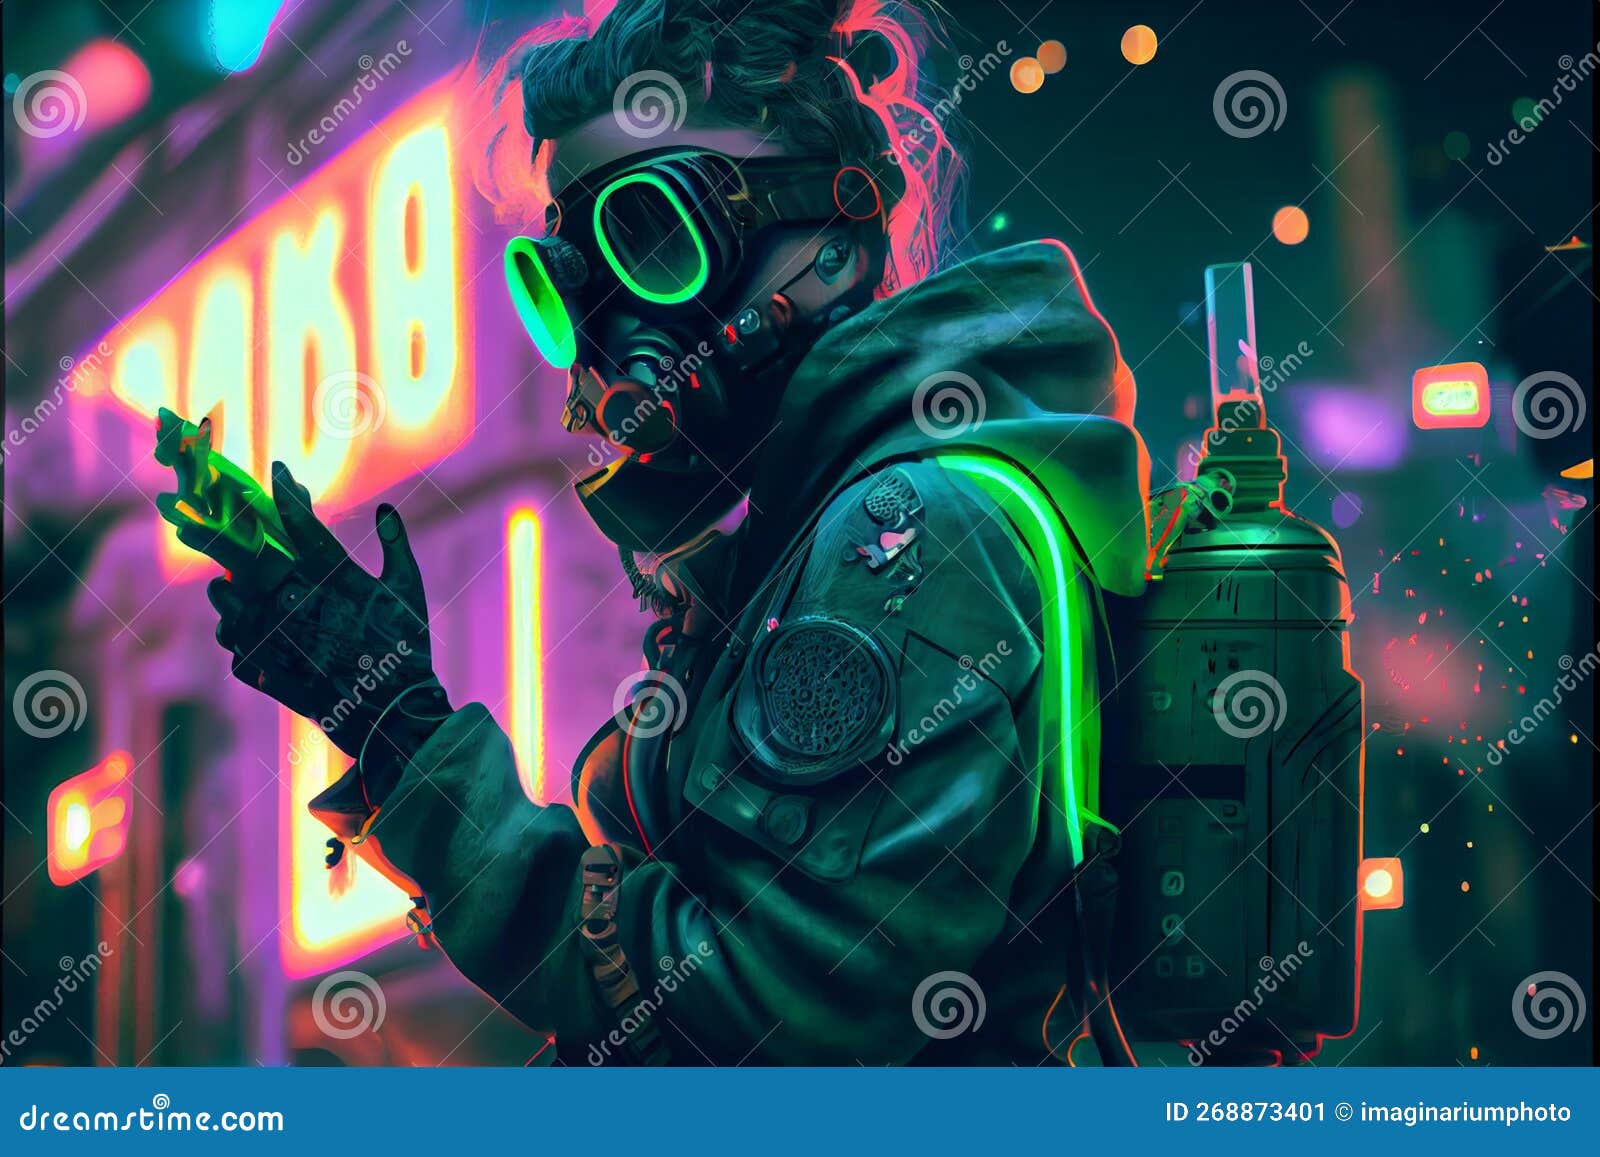 Ragazza Di Cyberpunk Con Maschera Futuristica a Gas Con Occhiali Verdi  Protettivi E Filtri in Piedi in Una Scena Notturna Con Aria Illustrazione  di Stock - Illustrazione di fantasia, cyberpunk: 268873401